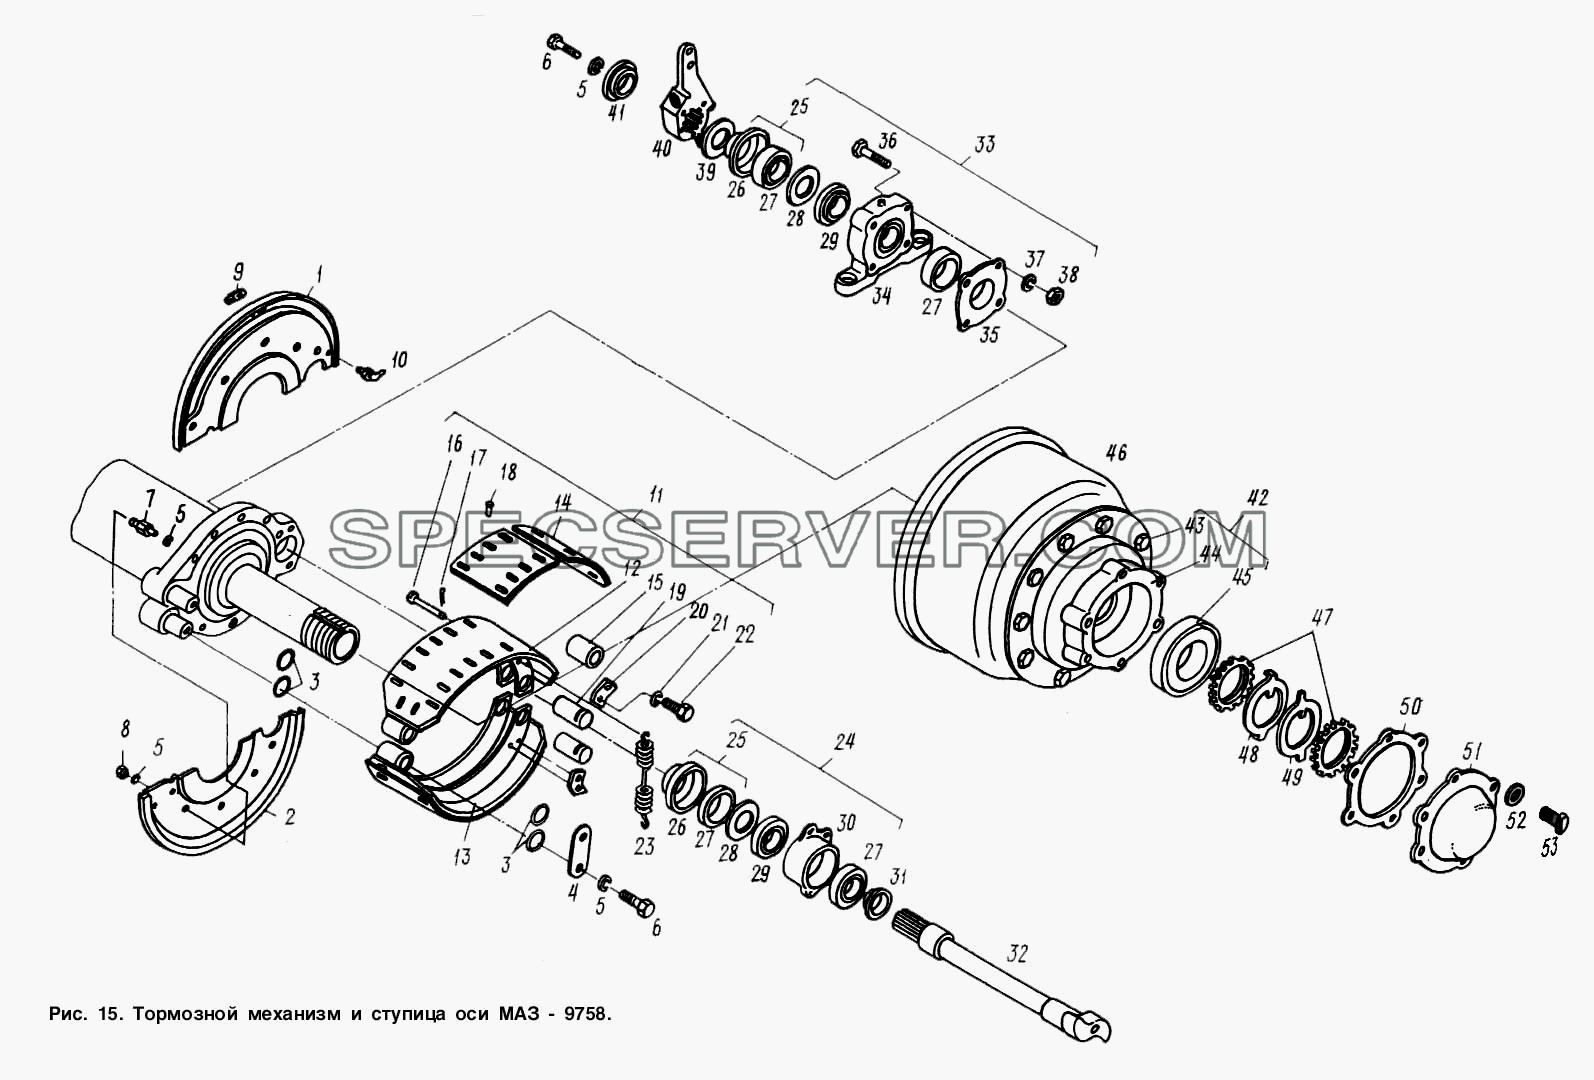 Тормозной механизм и ступица оси МАЗ-9758 для МАЗ-9758 (список запасных частей)